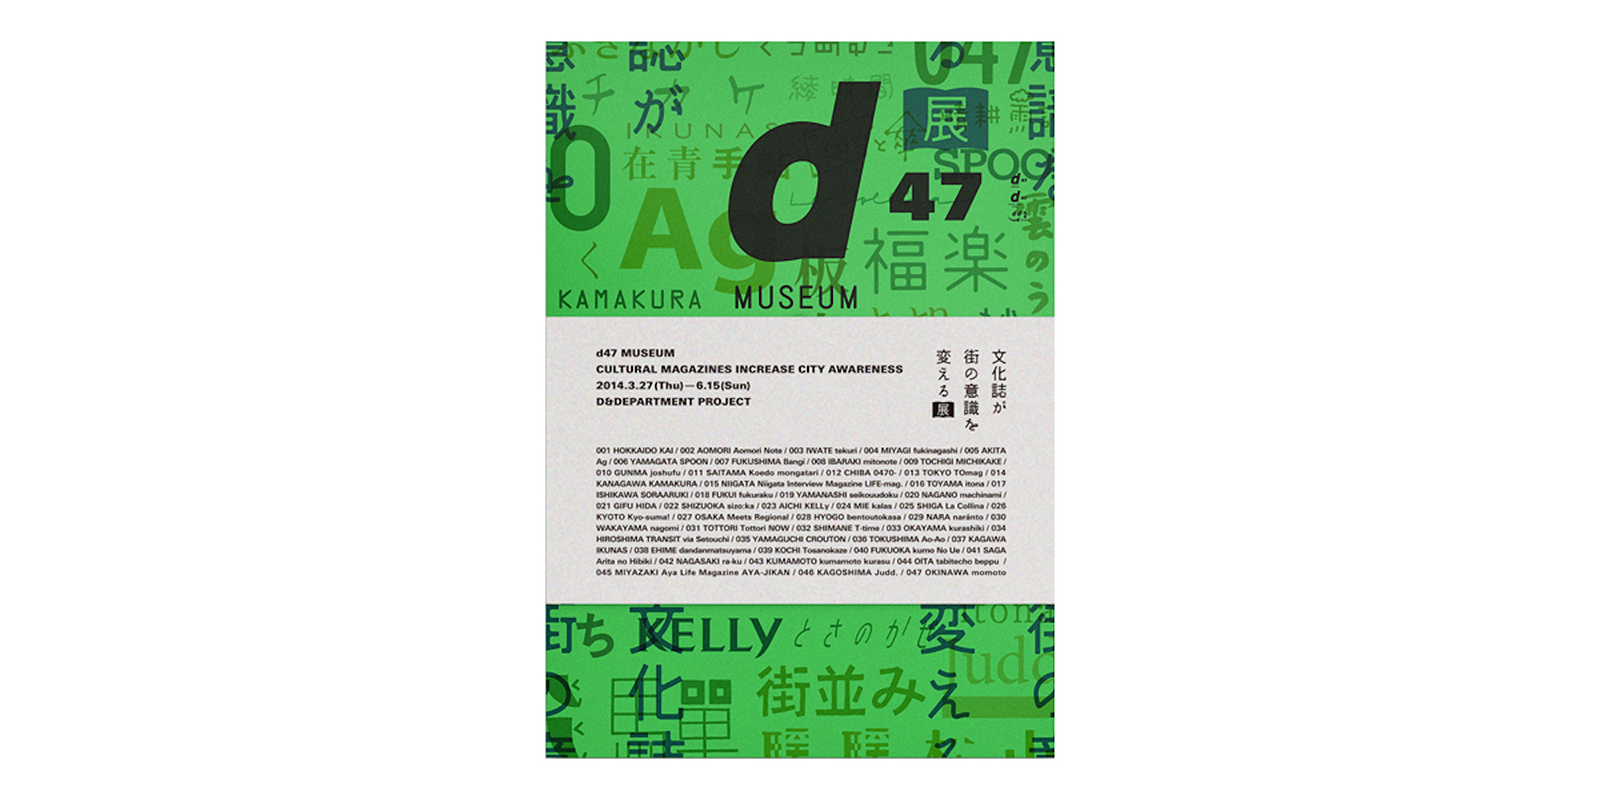 d47 MUSEUM 文化誌が街の意識を変える展 公式図録